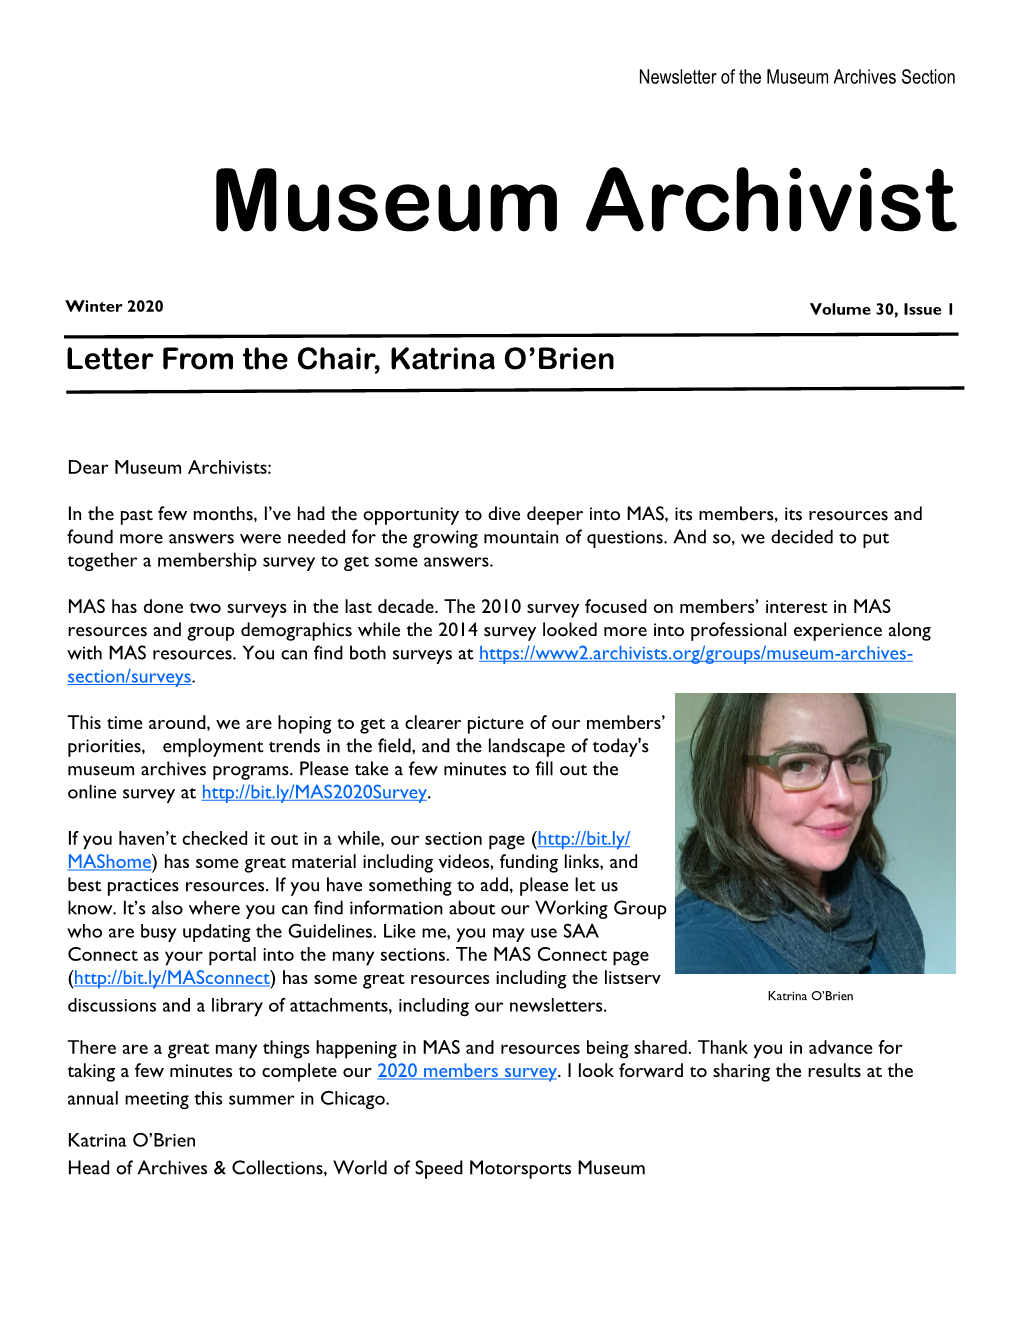 Museum Archivist